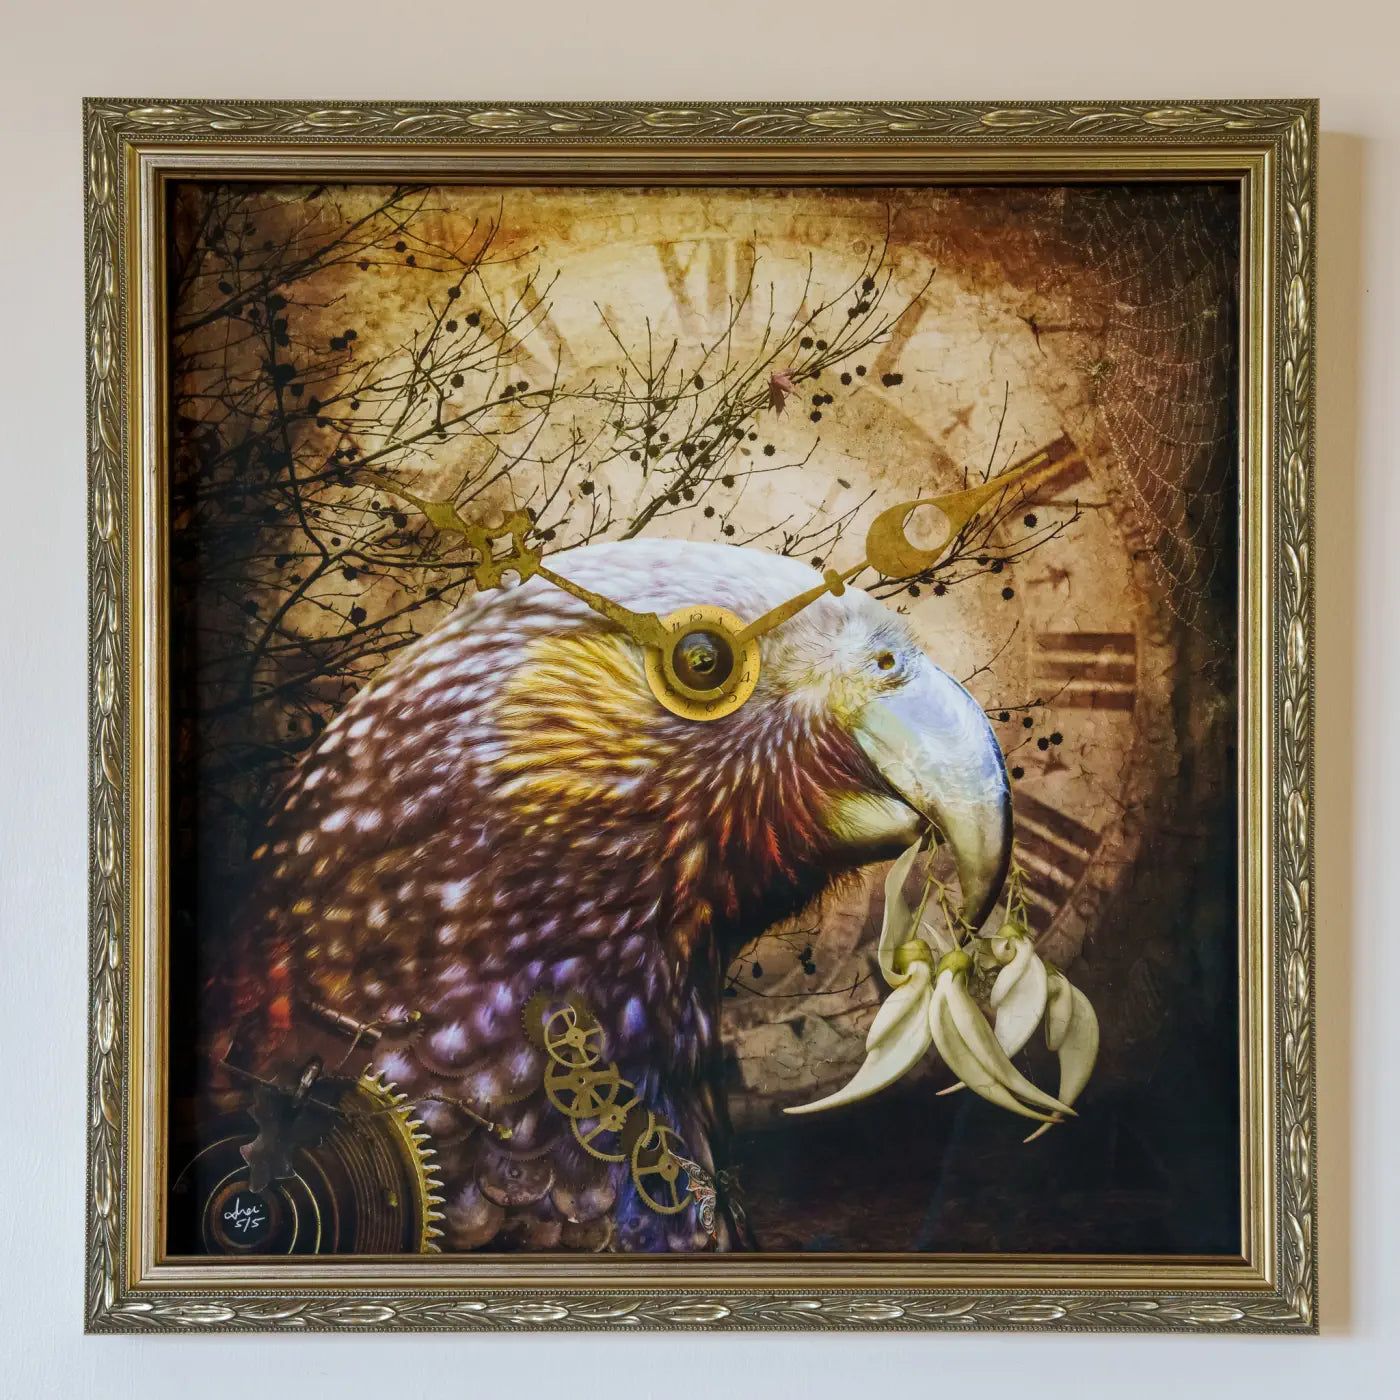 Kaka artwork in an ornate gold frame